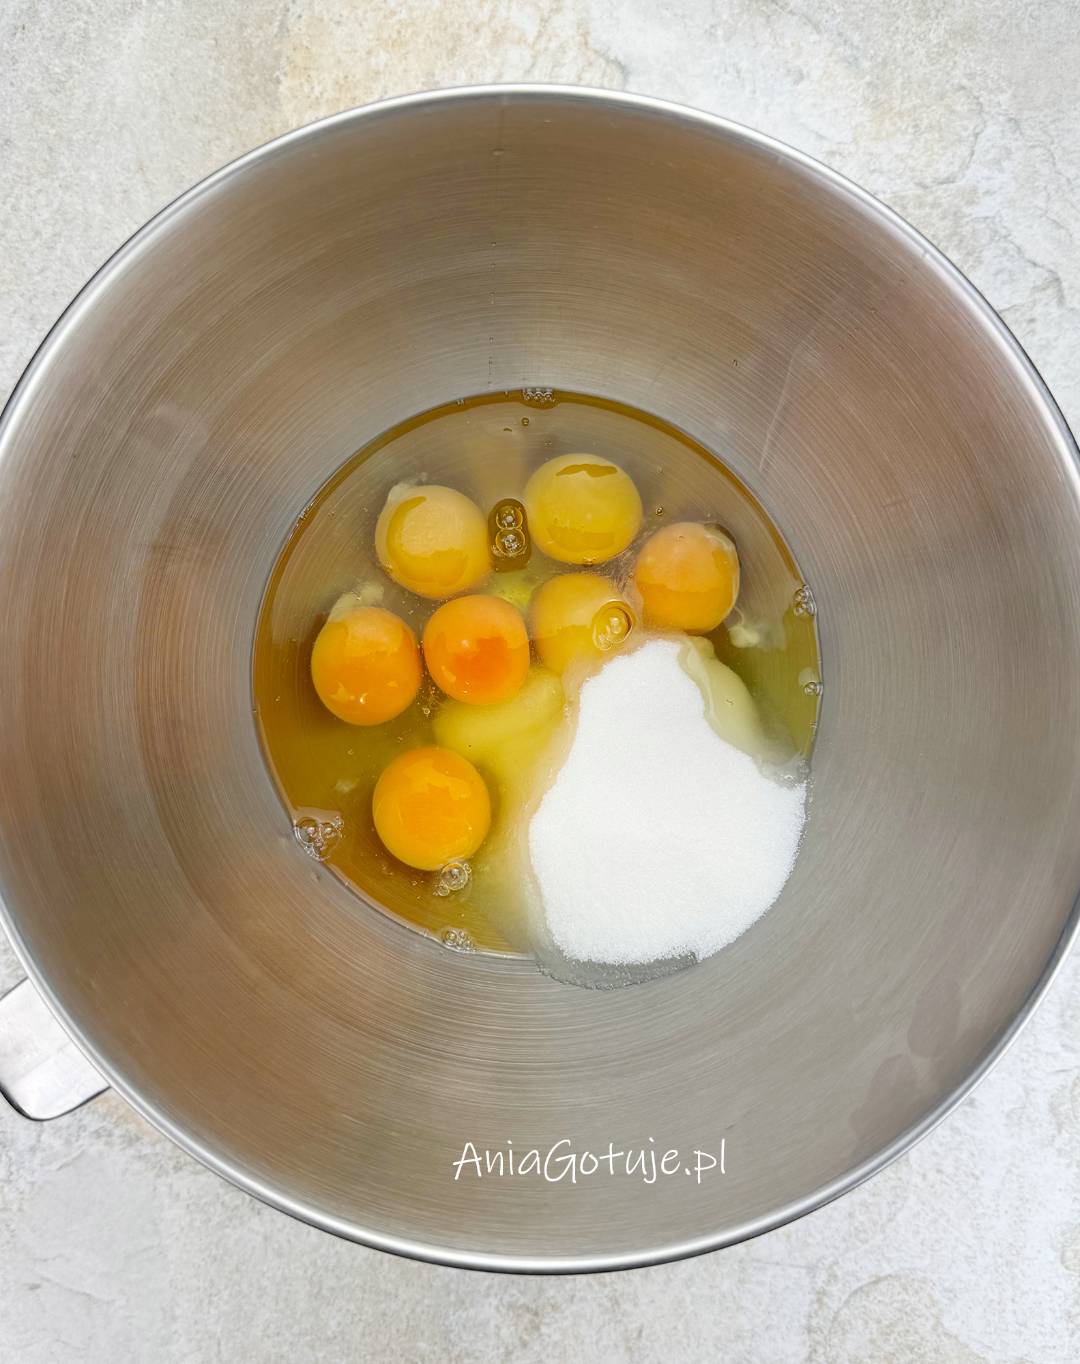 Połącz jajka z cukrem